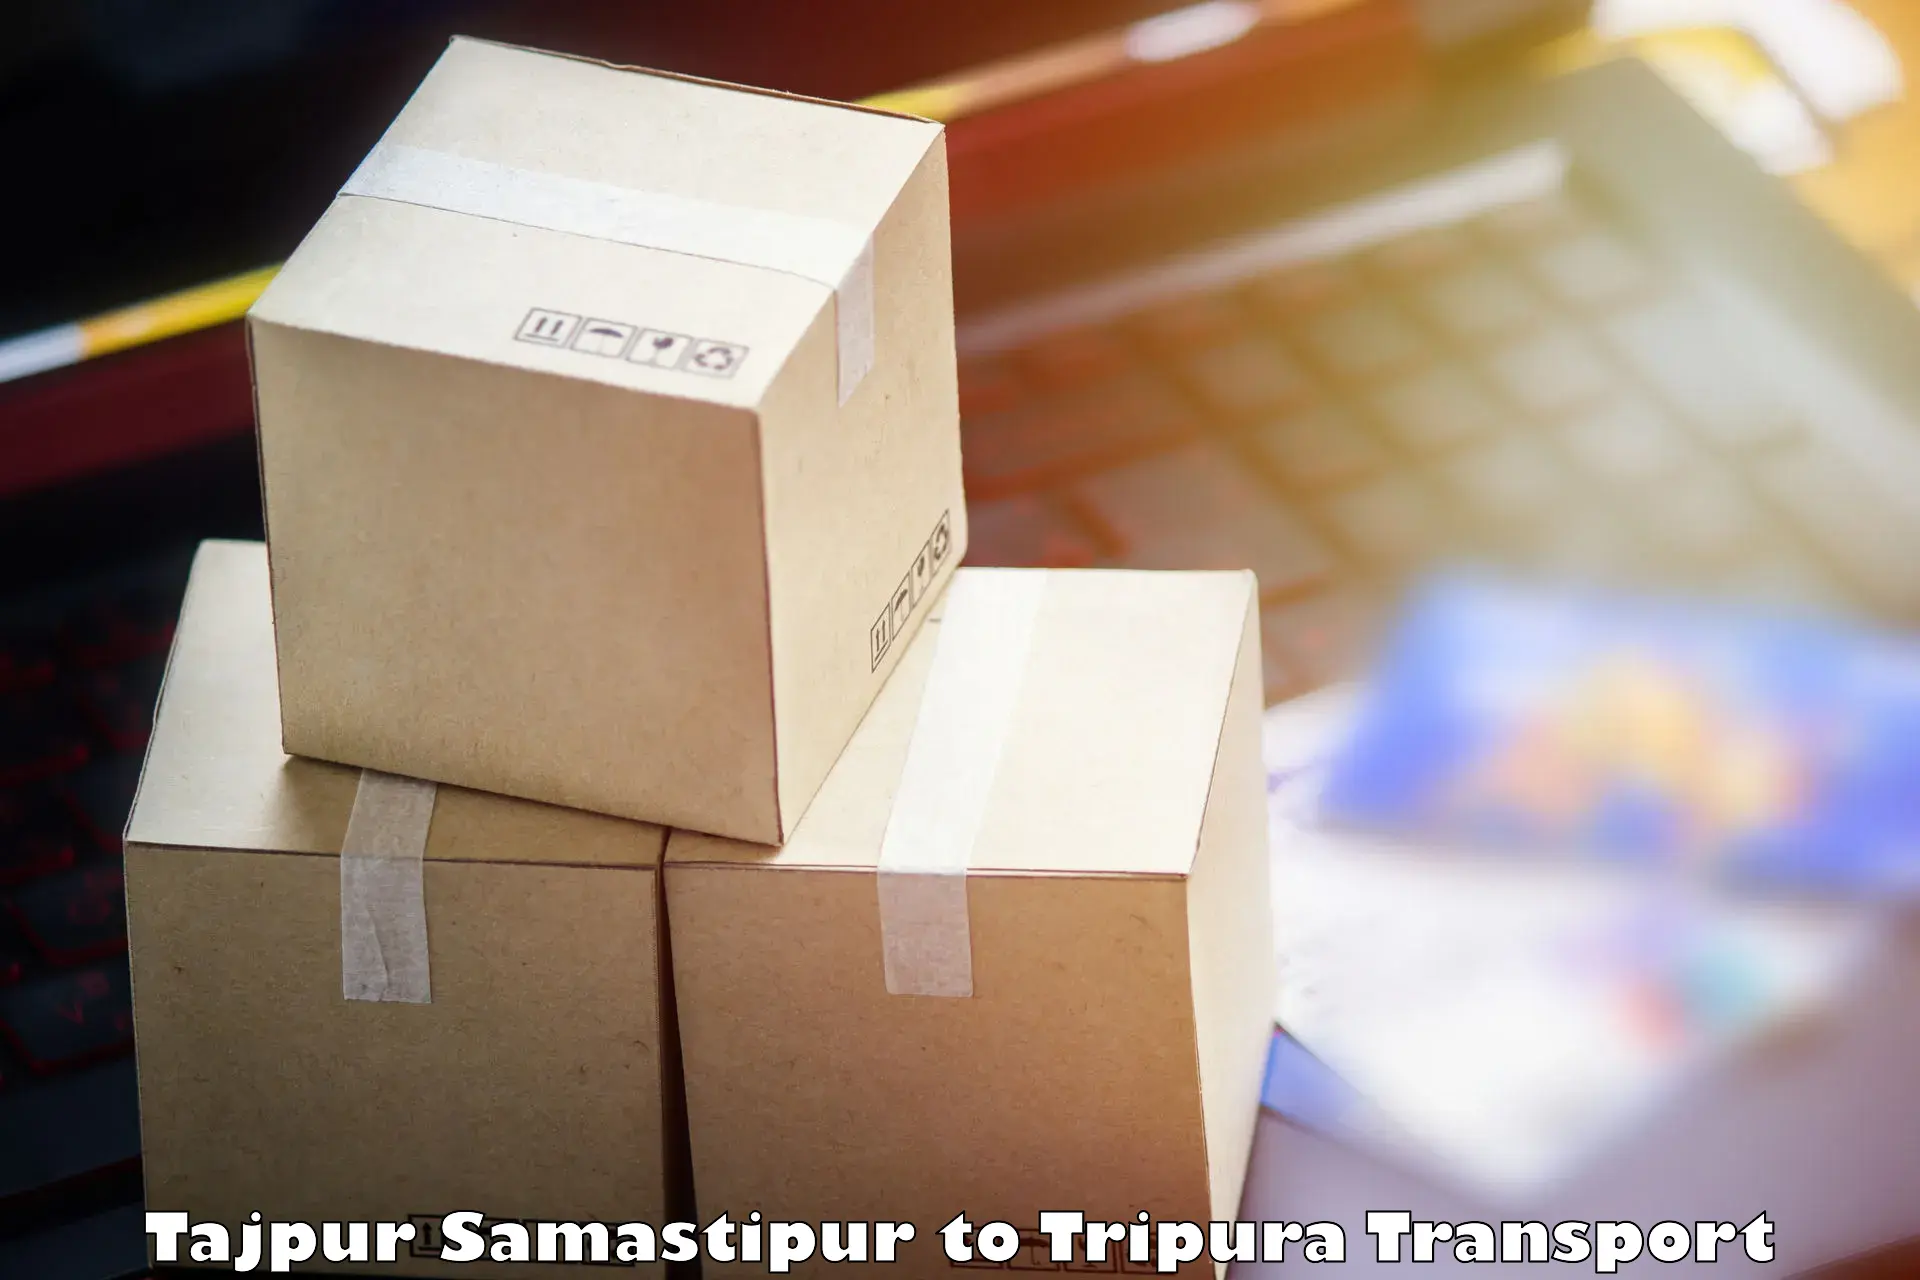 Cargo transport services Tajpur Samastipur to Aambasa